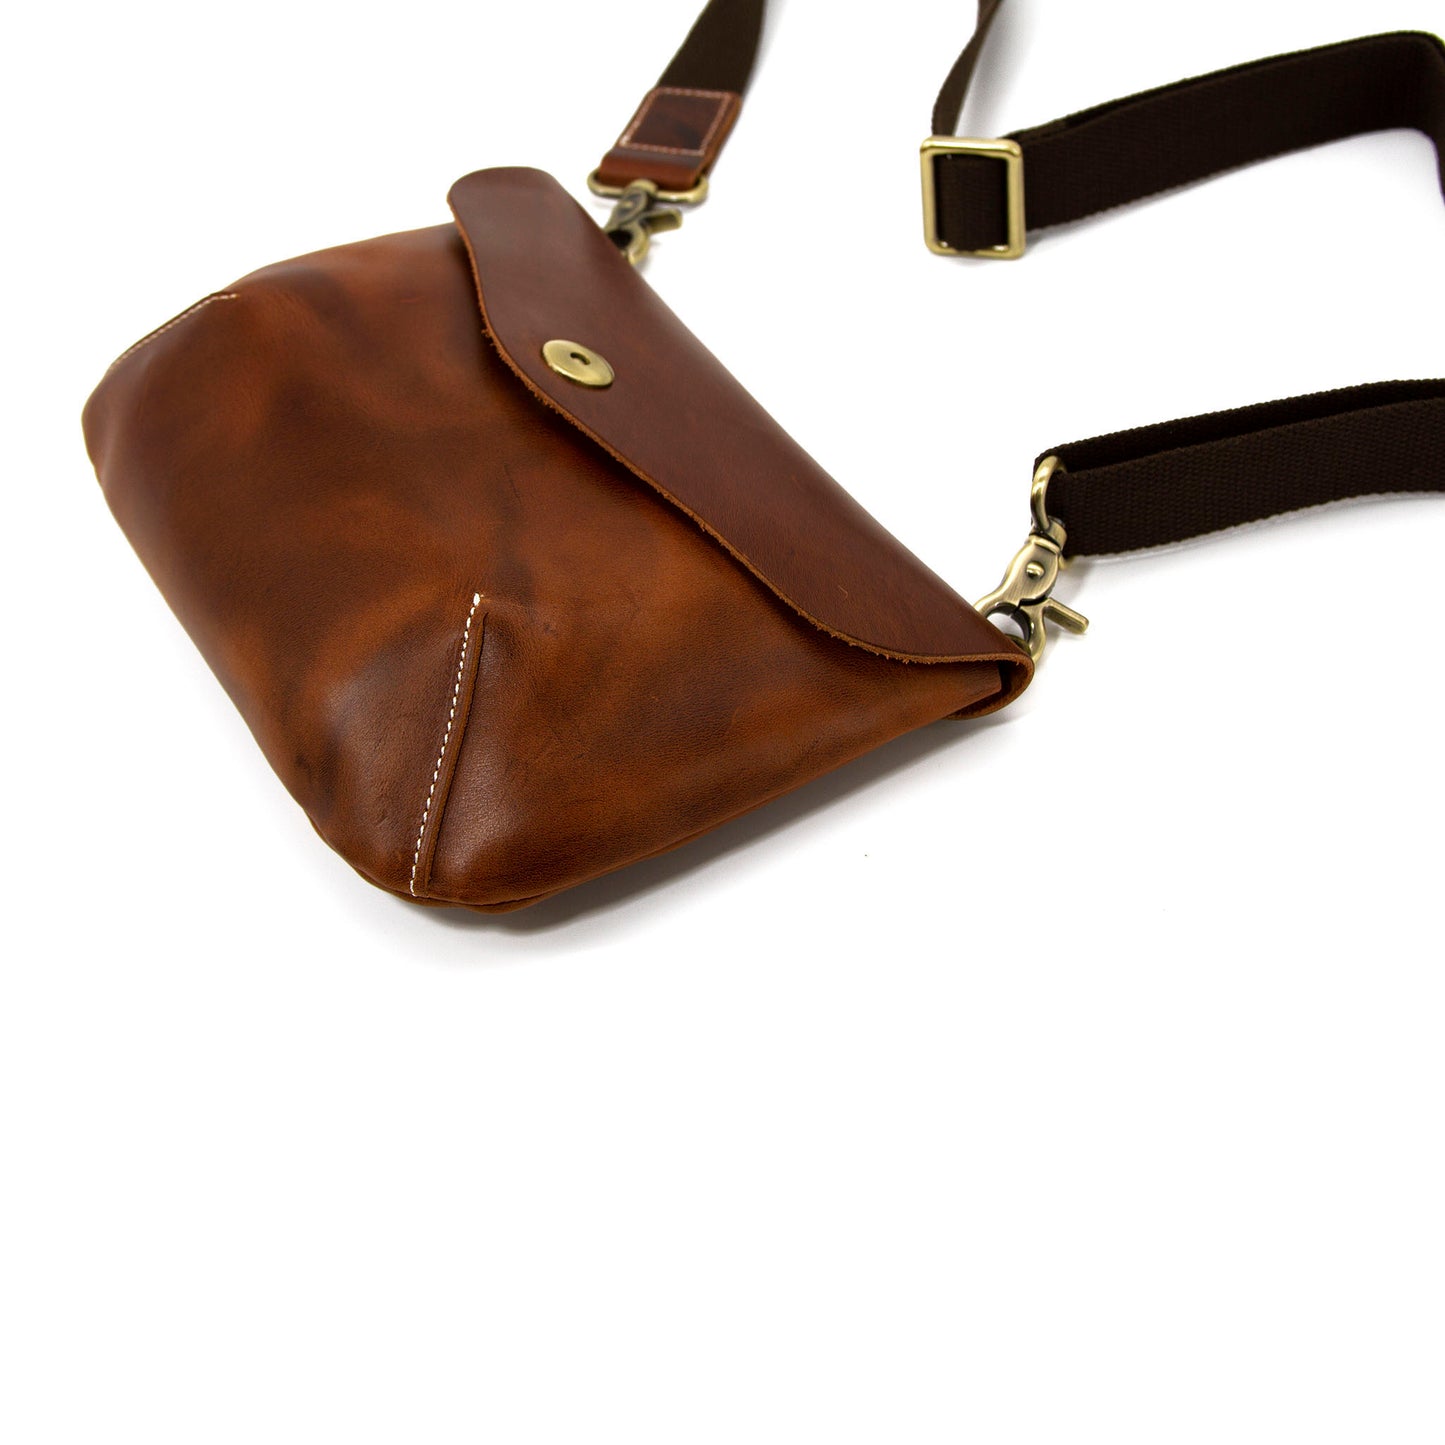 Small flap saddle bag